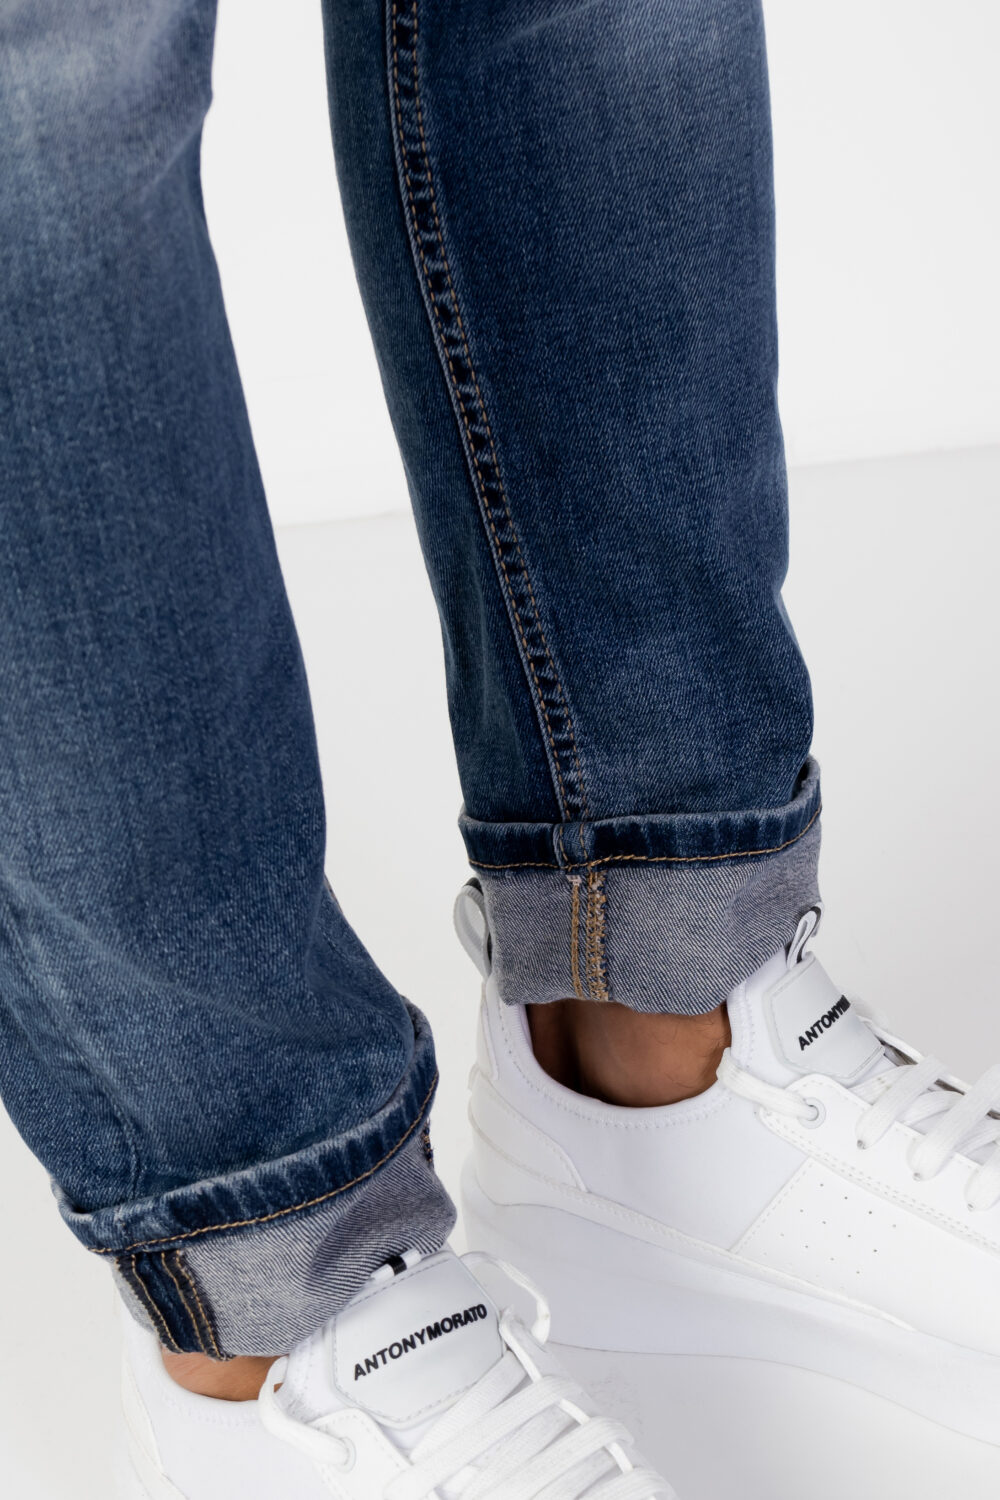 Jeans skinny Antony Morato PAUL Blue Denim - Foto 4